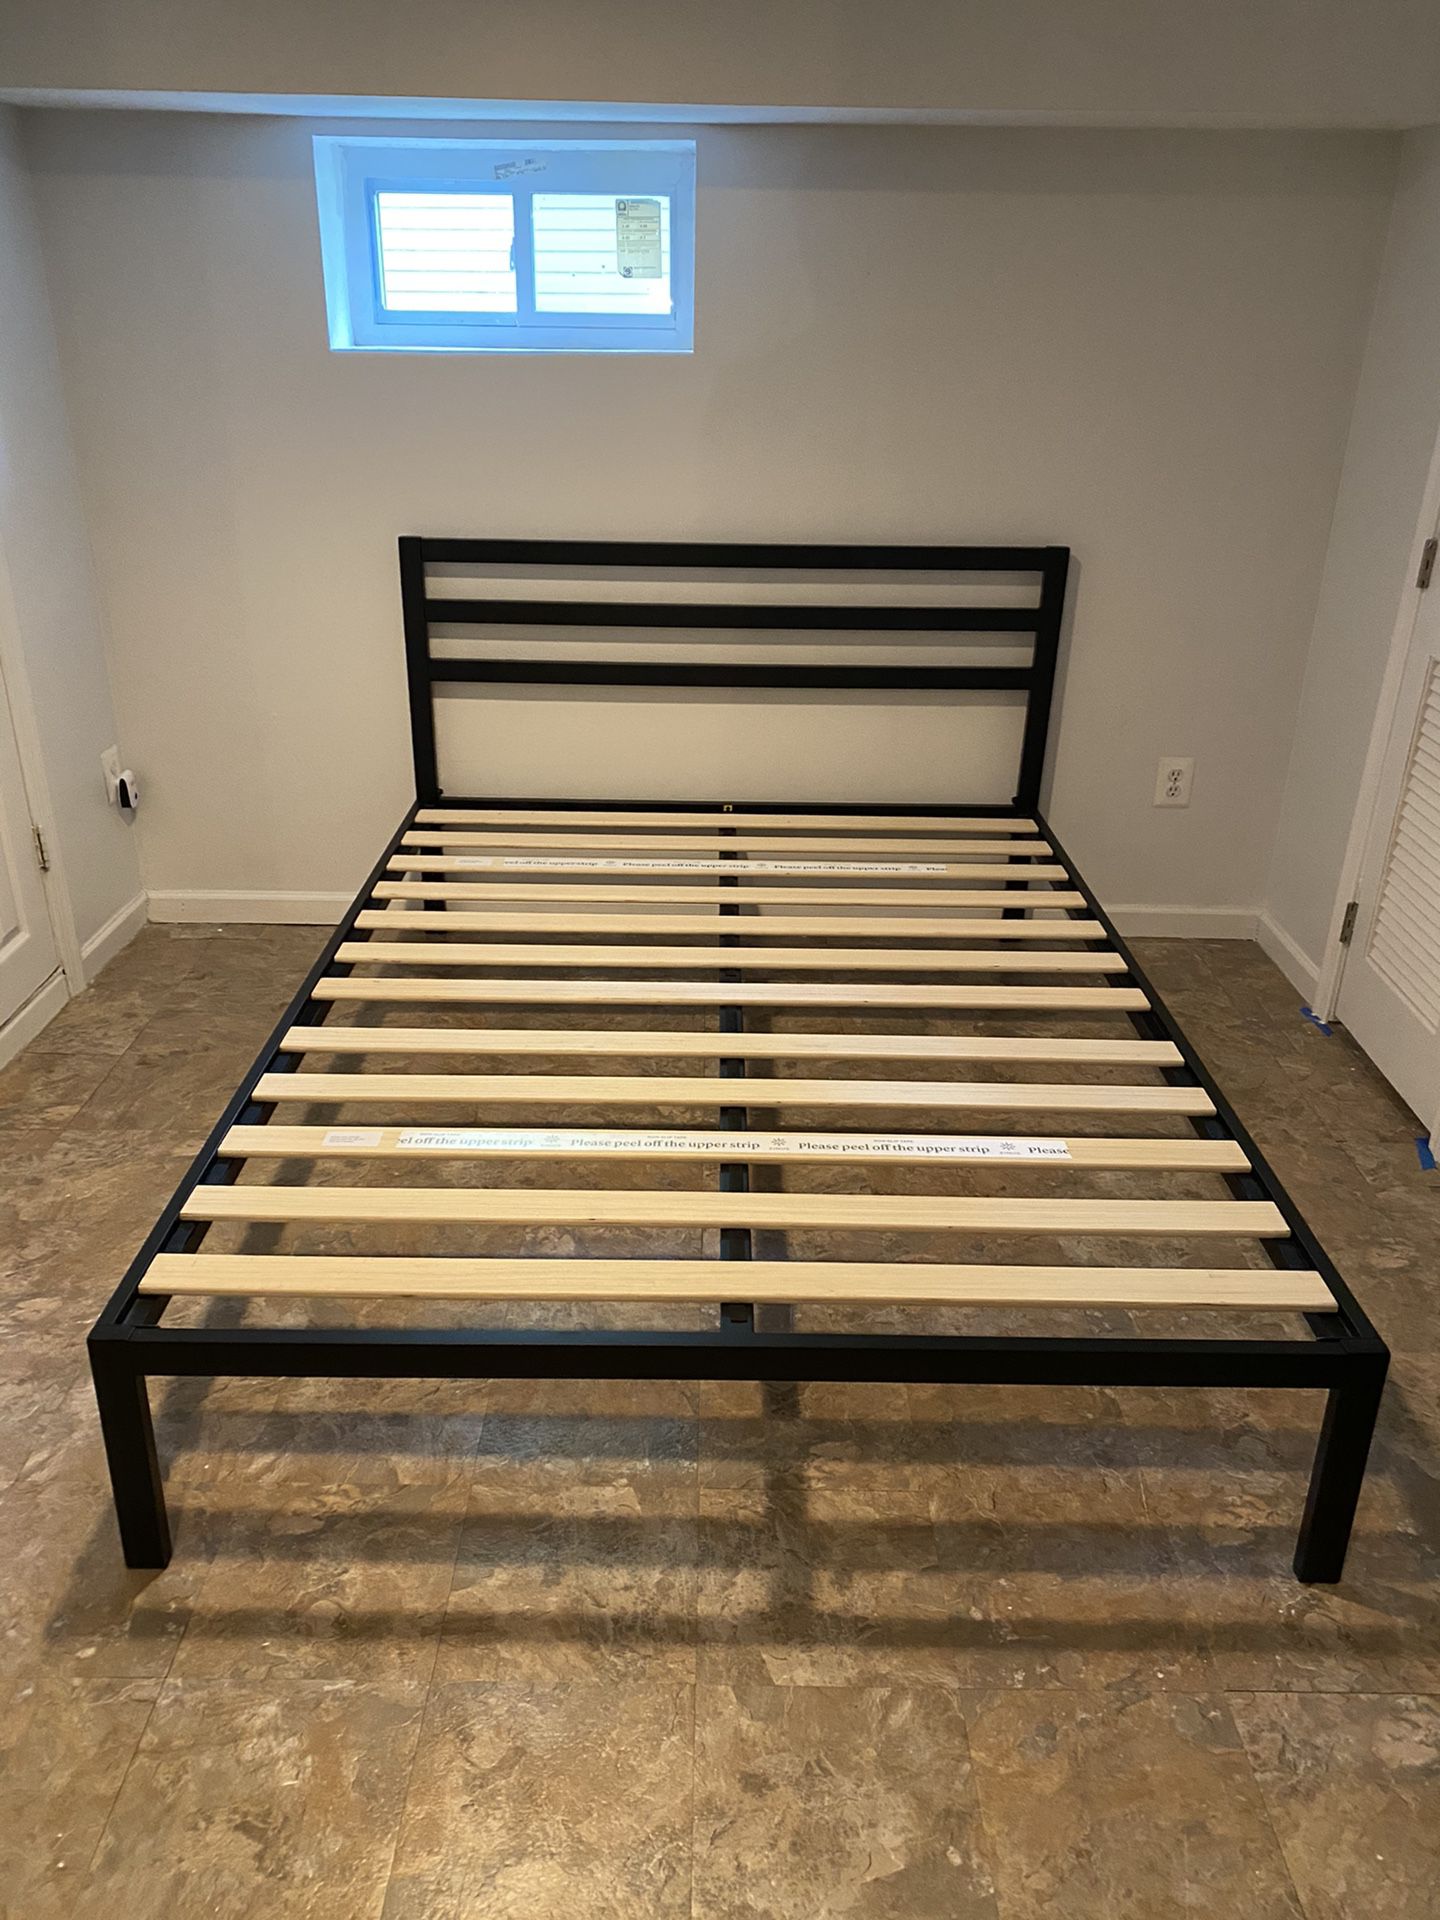 Queen steel bed frame with wooden slats (Zinus 14”)